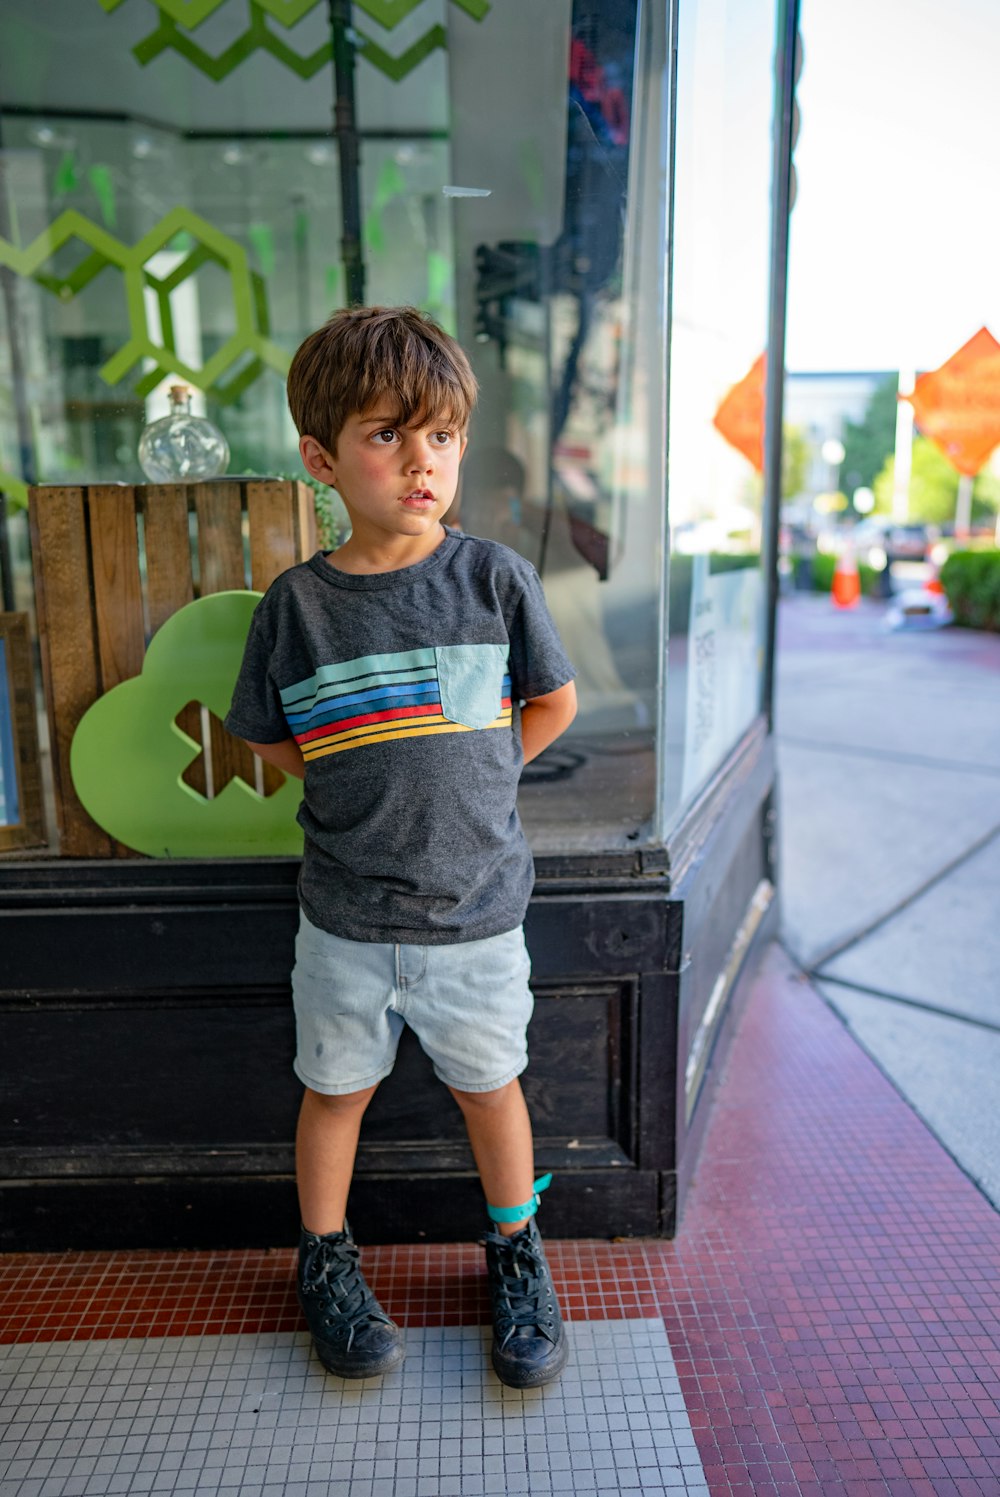 Un niño parado frente a una puerta de vidrio